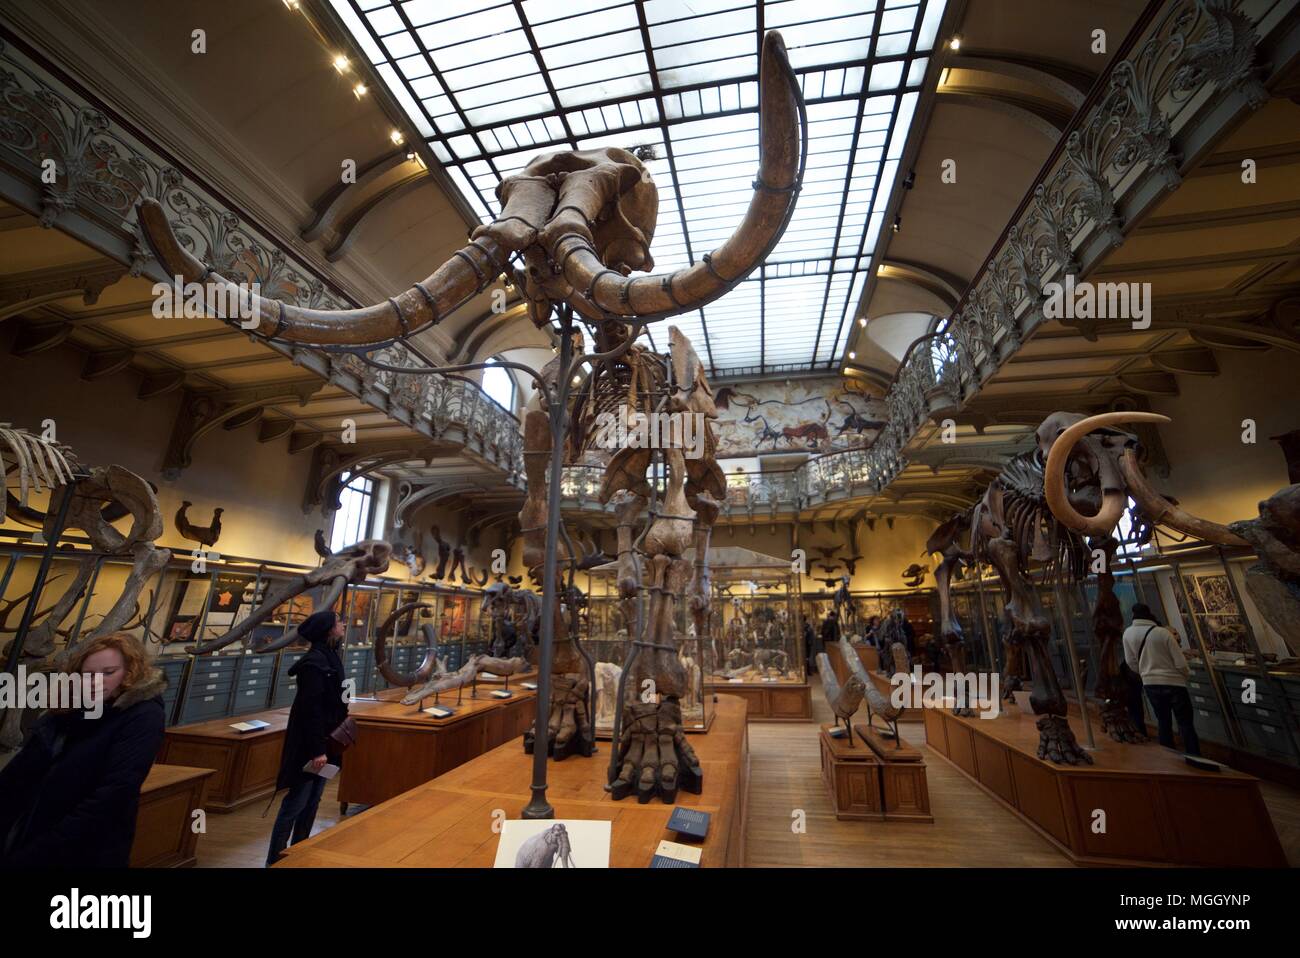 Un mammoth/scheletro di elefante in mostra all'interno del Museo Nazionale di Storia Naturale di Parigi, con altri scheletri di animali all'interno. Foto Stock